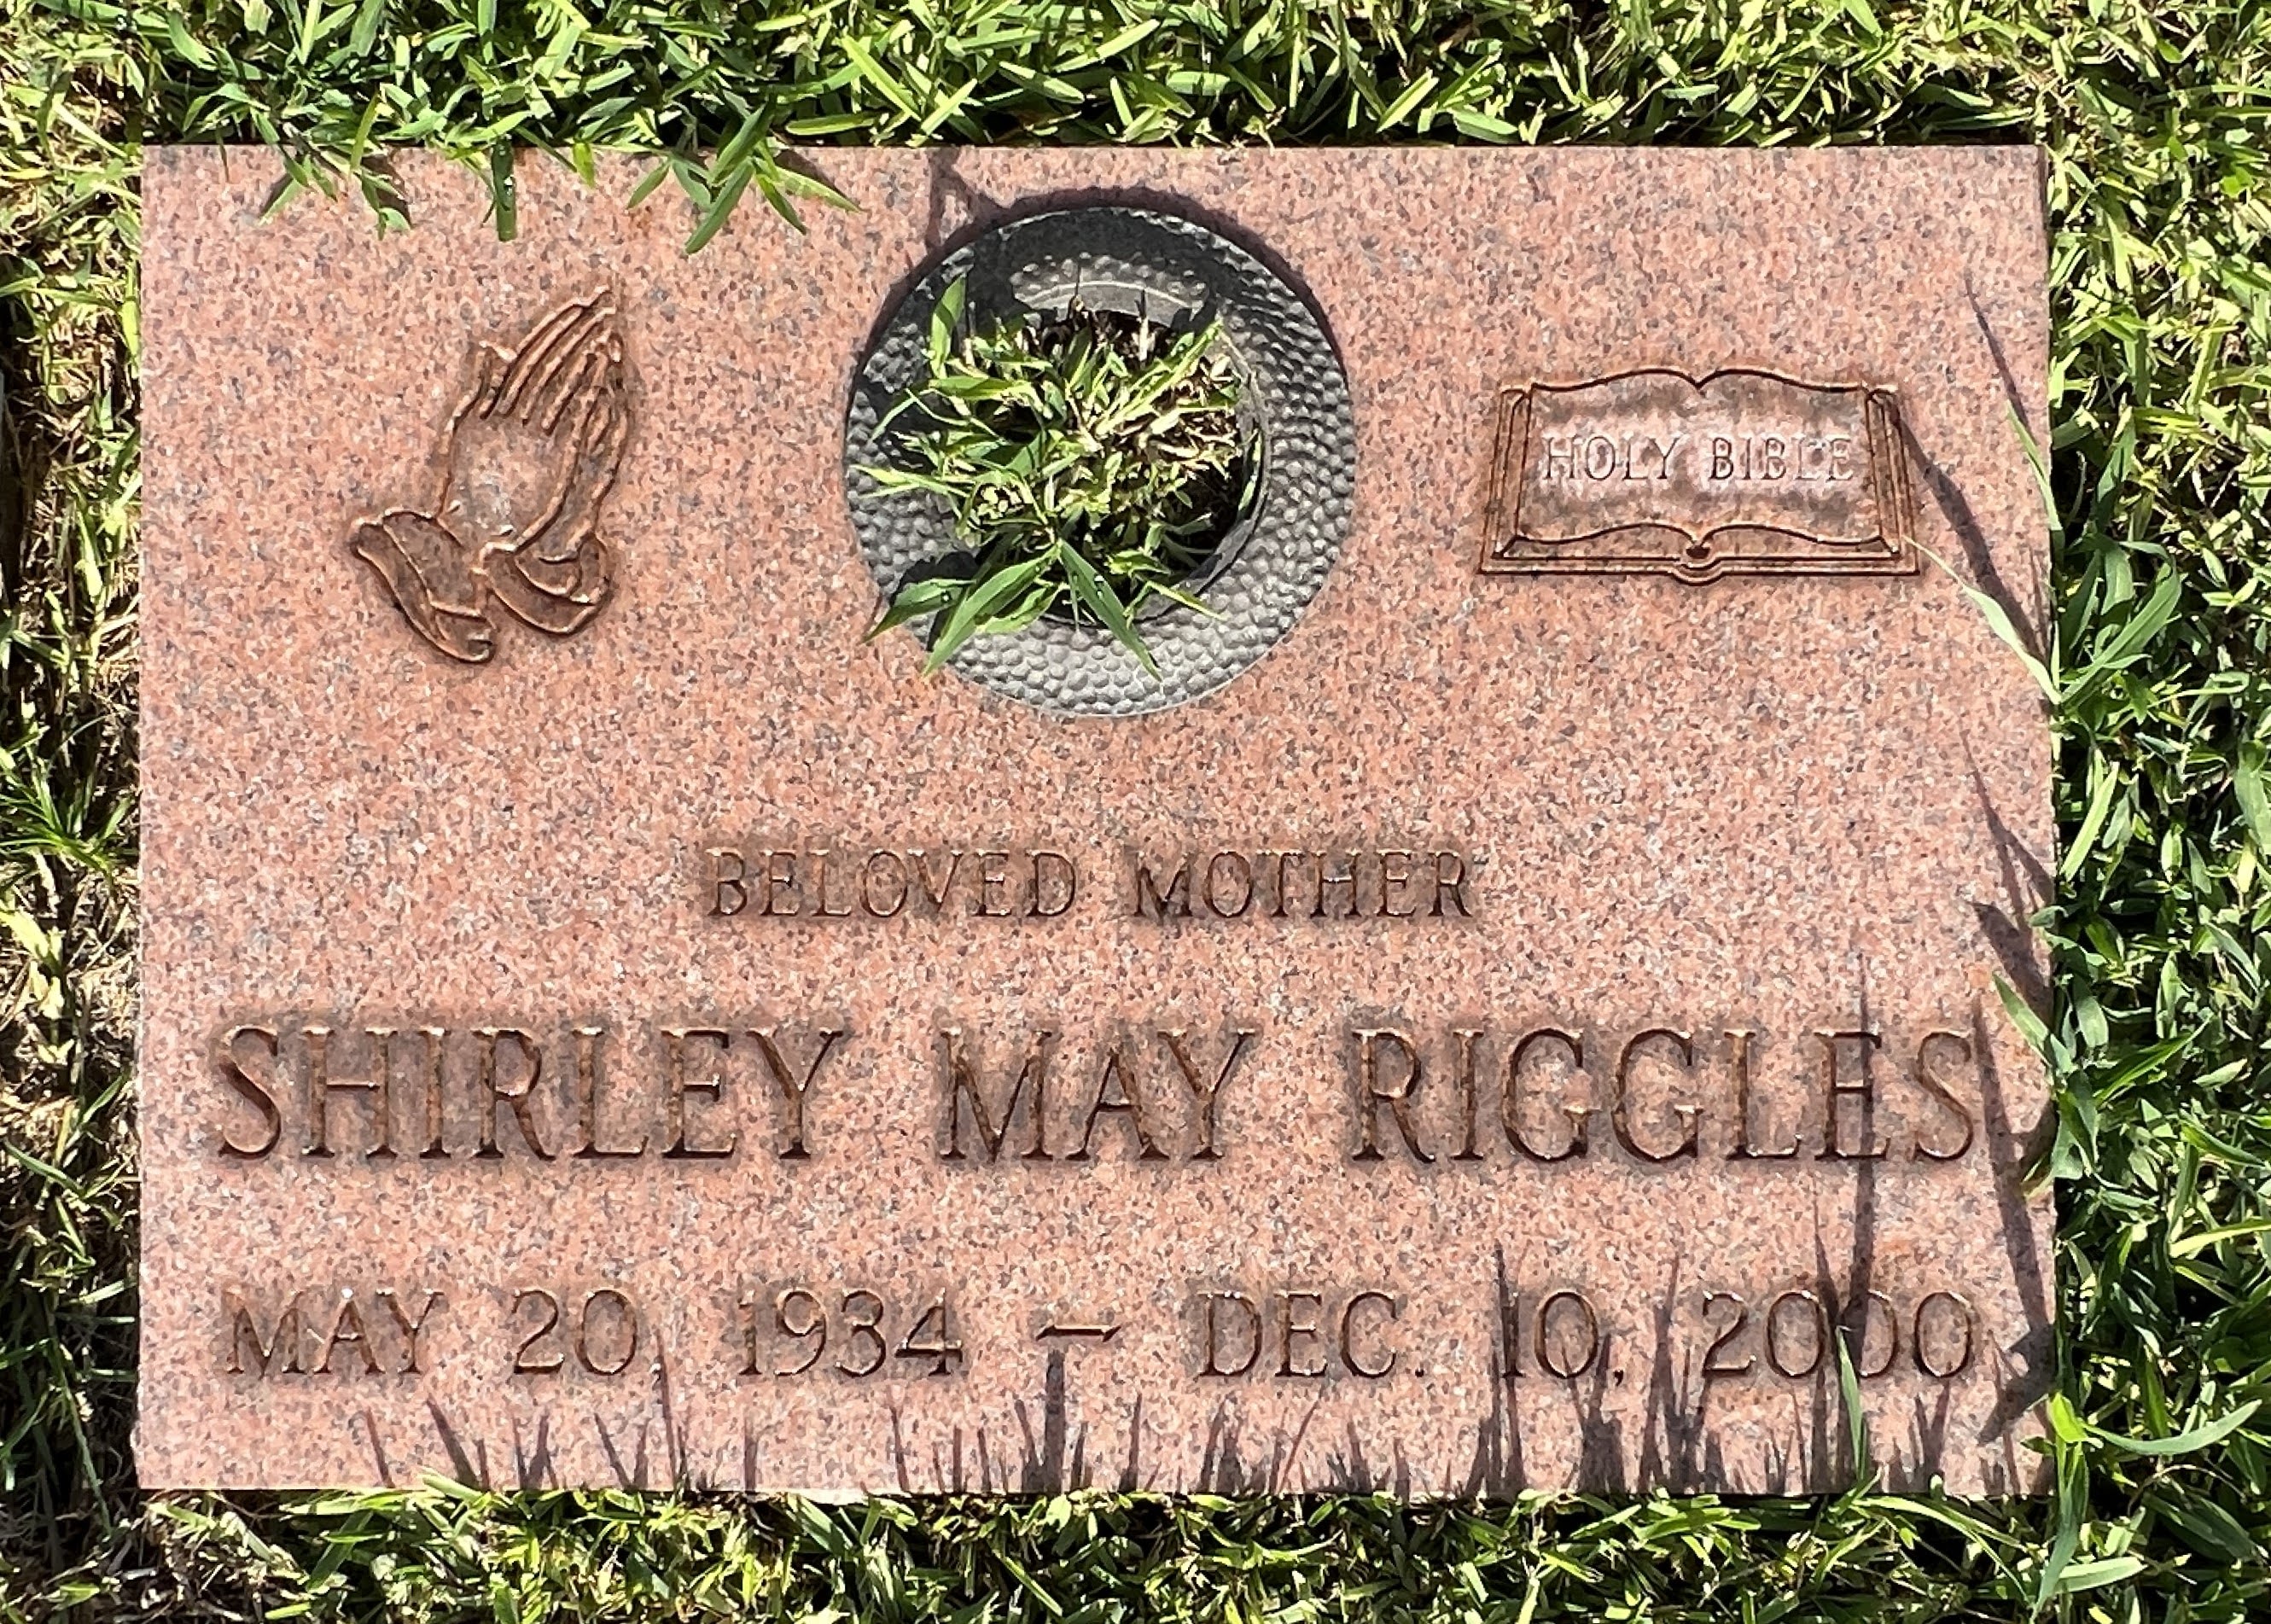 Shirley May Riggles